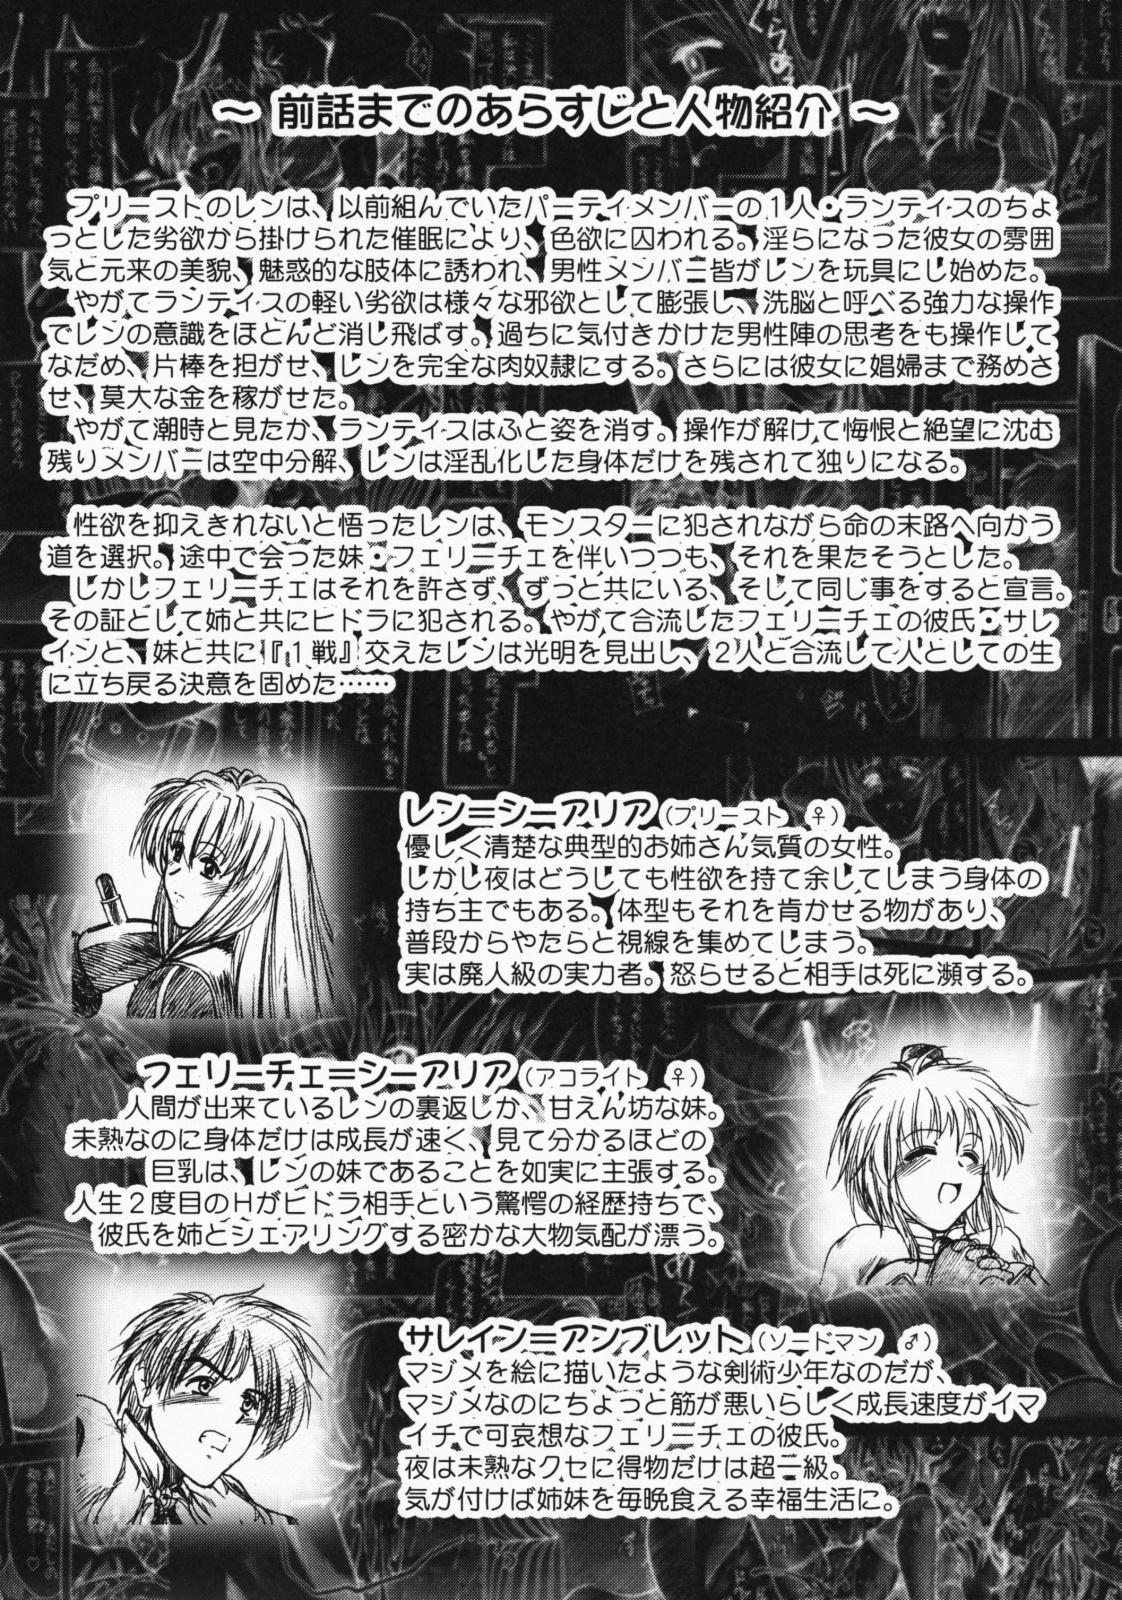 Comic Pruntera Extend Vol. 2 Taiyou wa Yuugure Toki ni Noboru 2